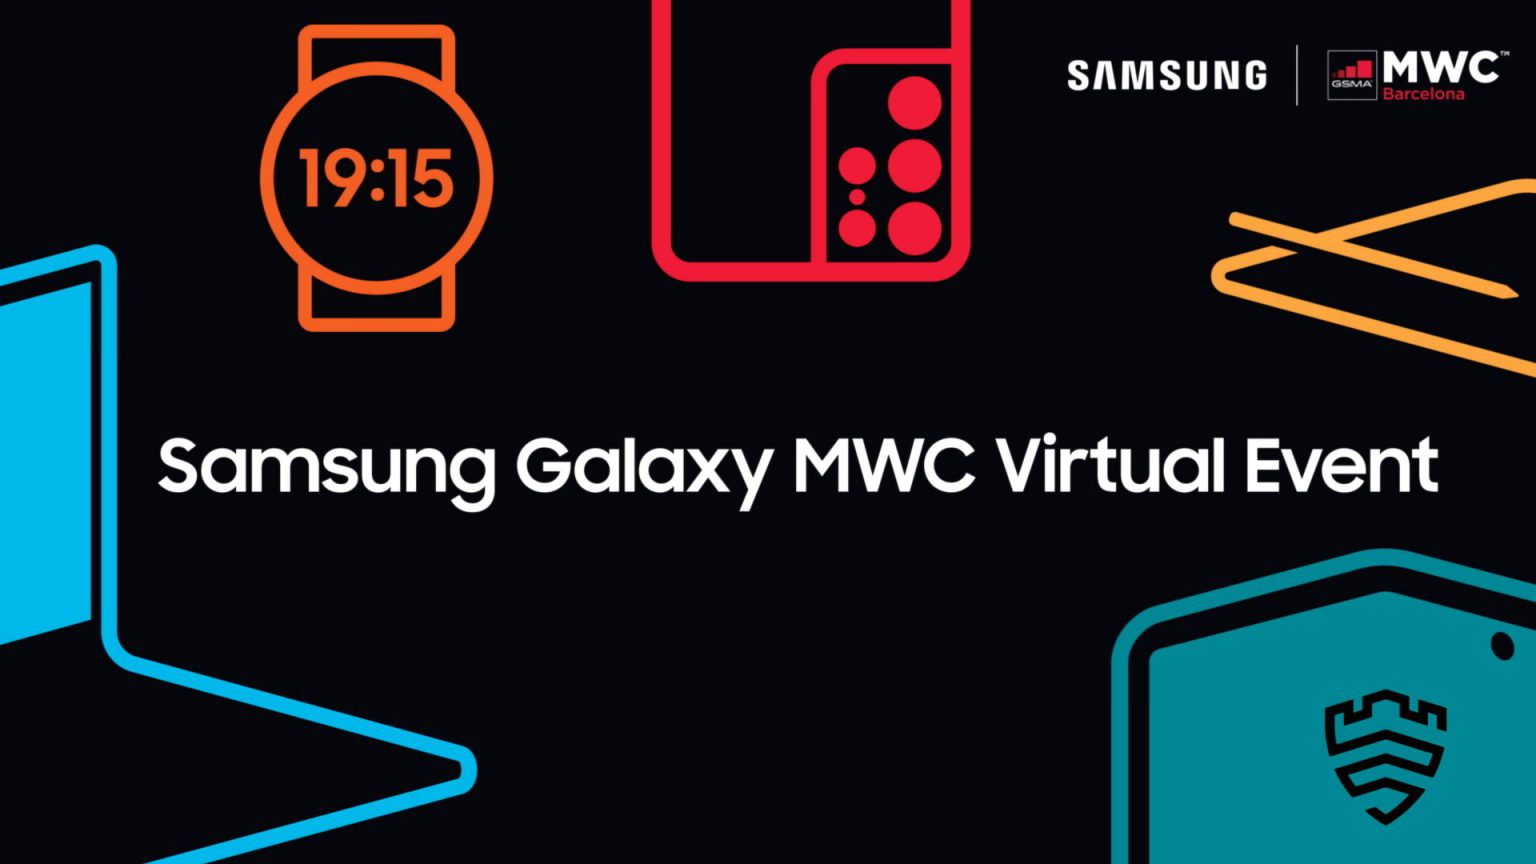 Te contamos fechas y horarios, así como sitios para poder disfrutar del evento en línea de Samsung en el Mobile World Congress 2021.